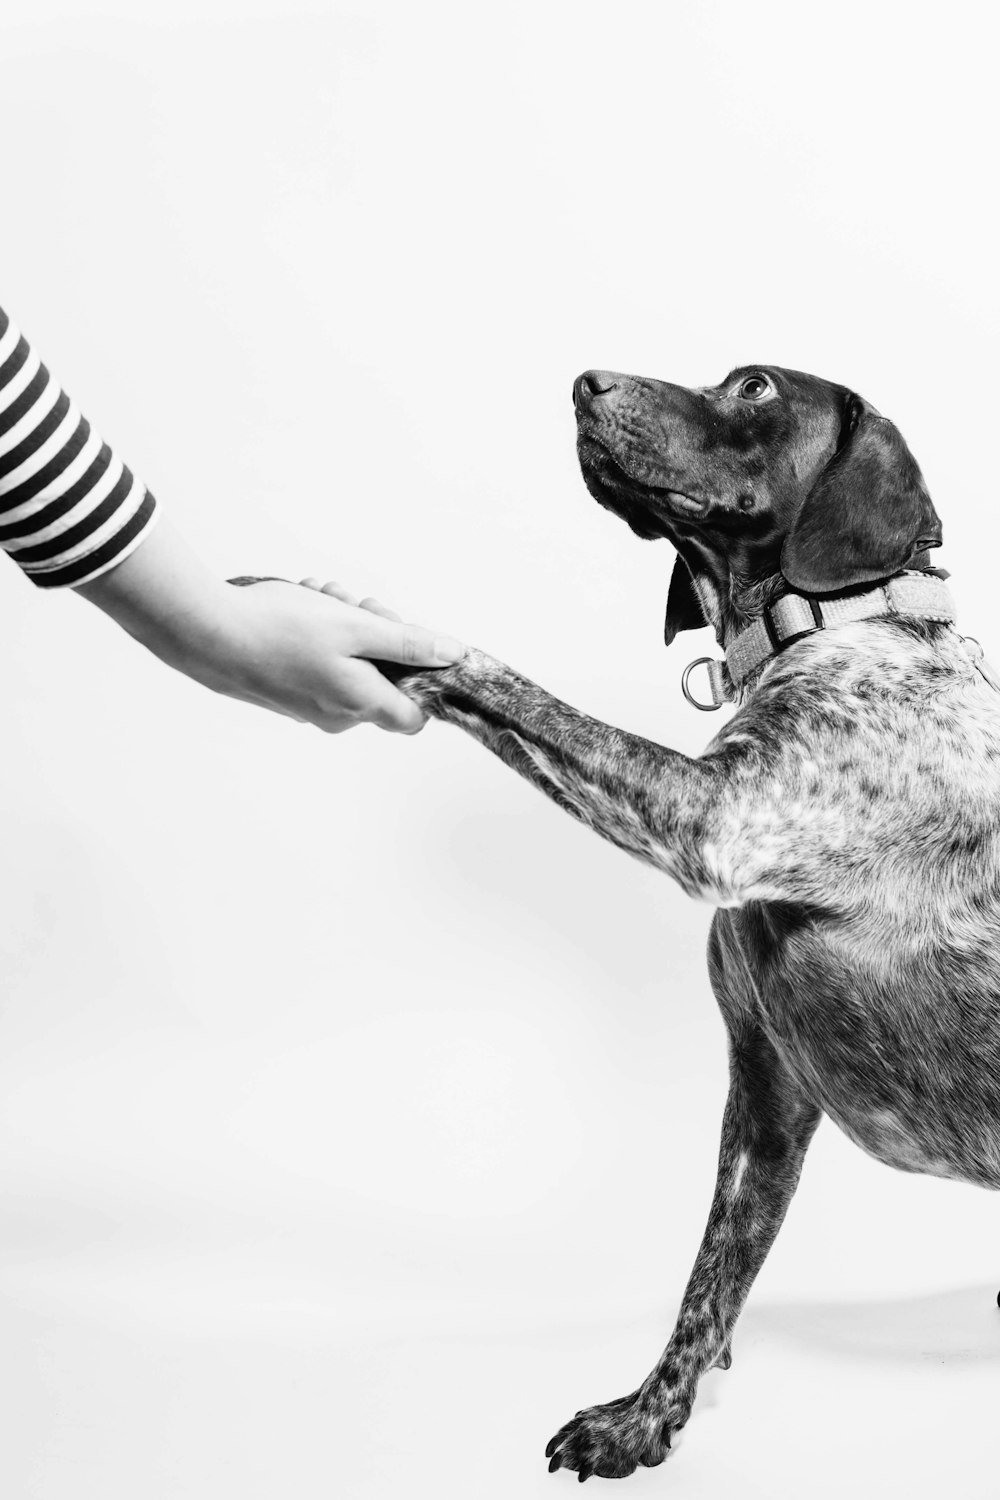 Photo en niveaux de gris d’une personne et d’un chien se tenant la main